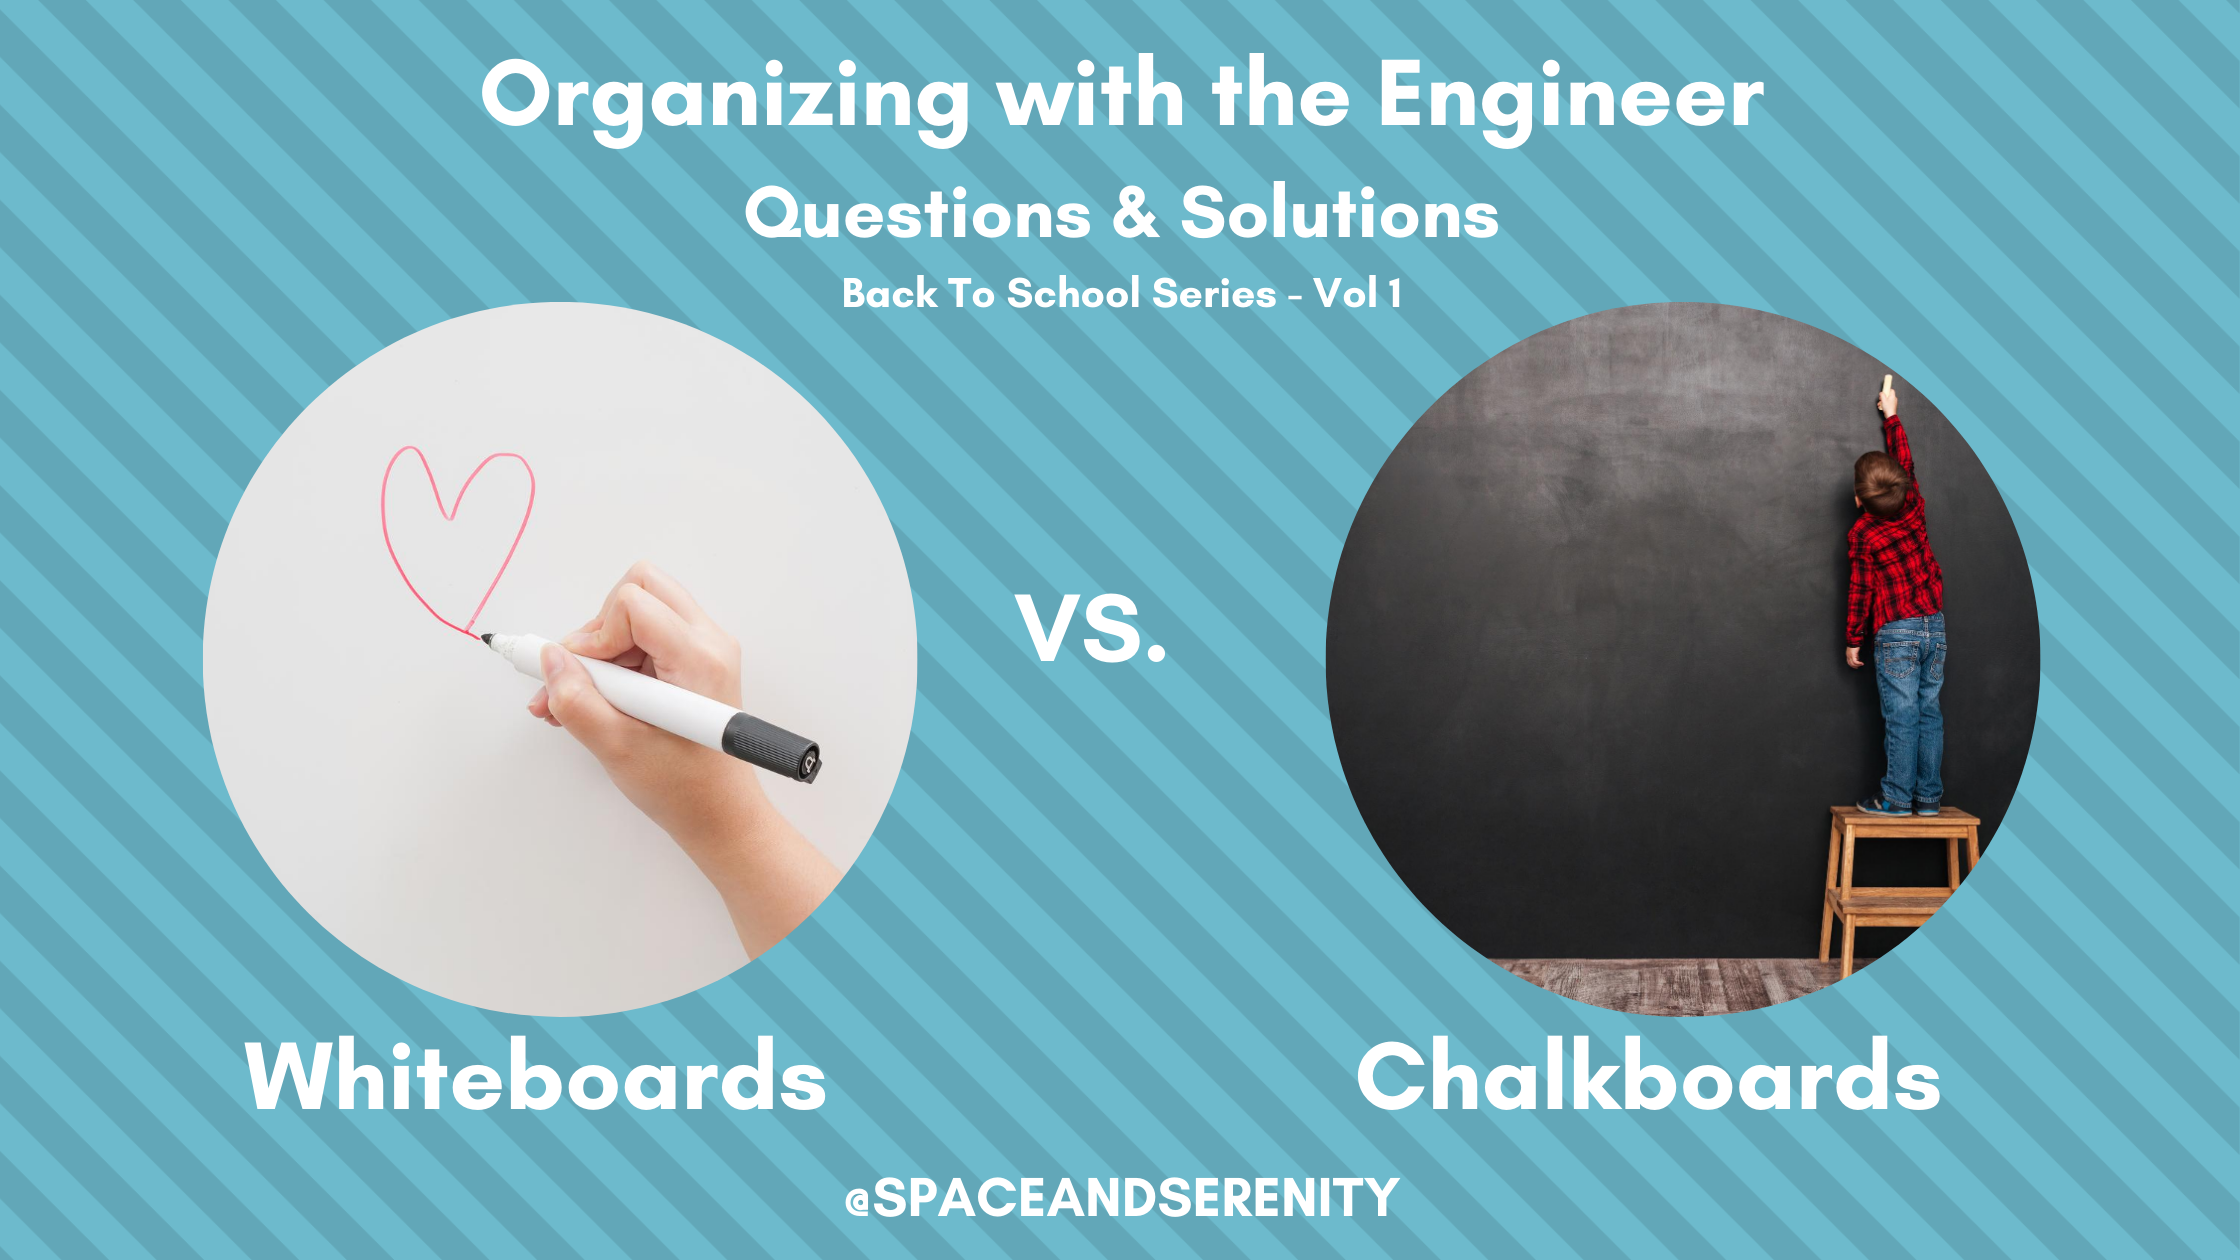 Chalkboard vs. Whiteboard…who wins?